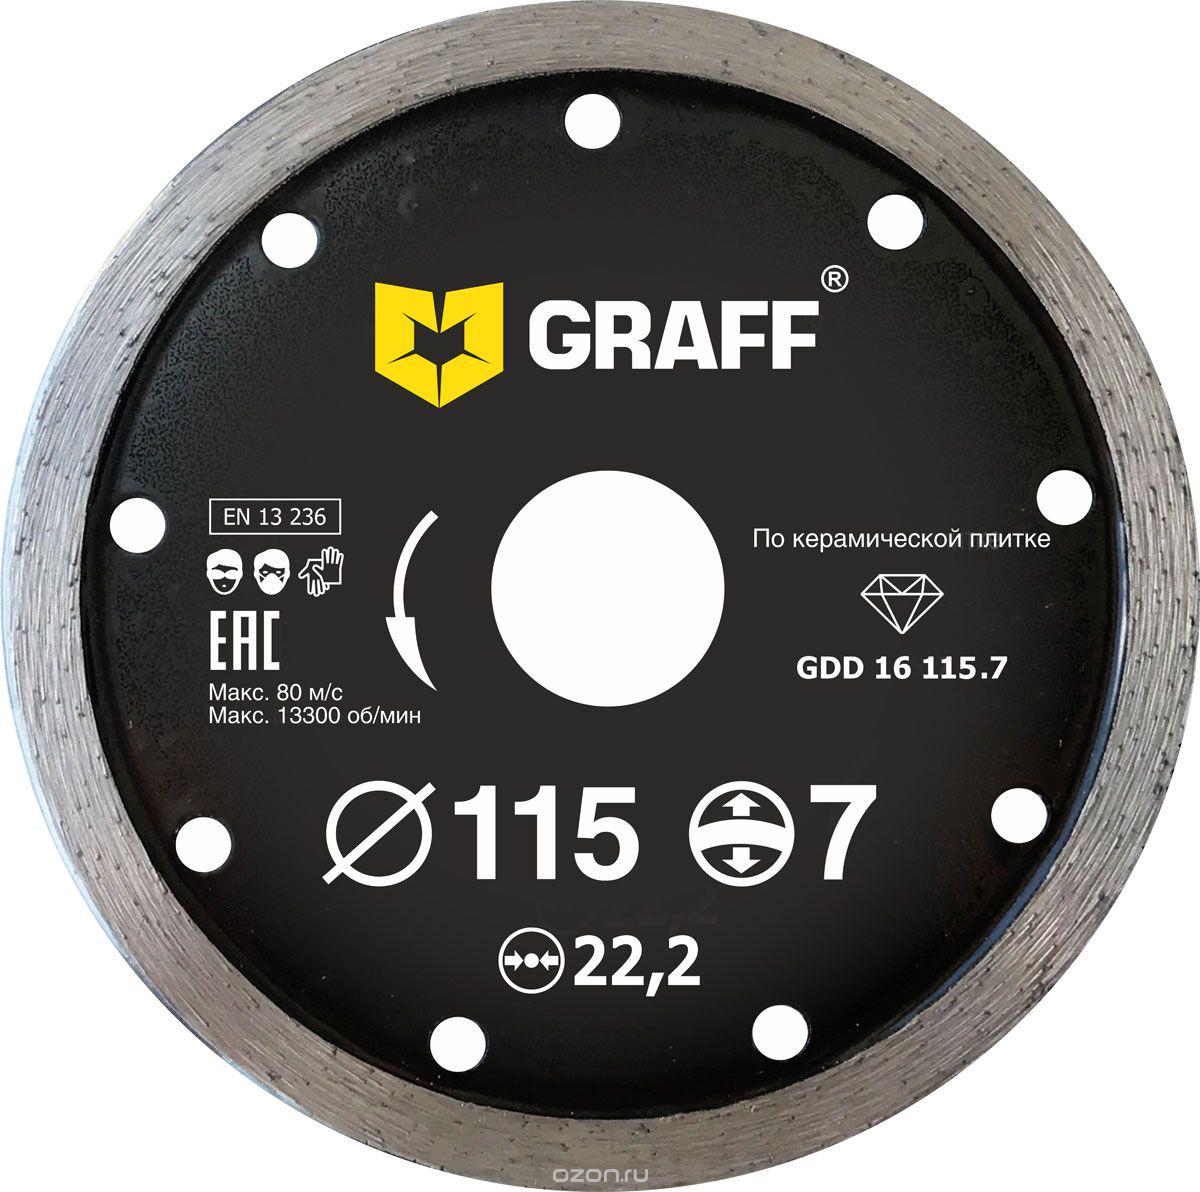 Диск отрезной алмазный GRAFF (GRAFF GDD 16 115.7) Ф115х22мм по керамике